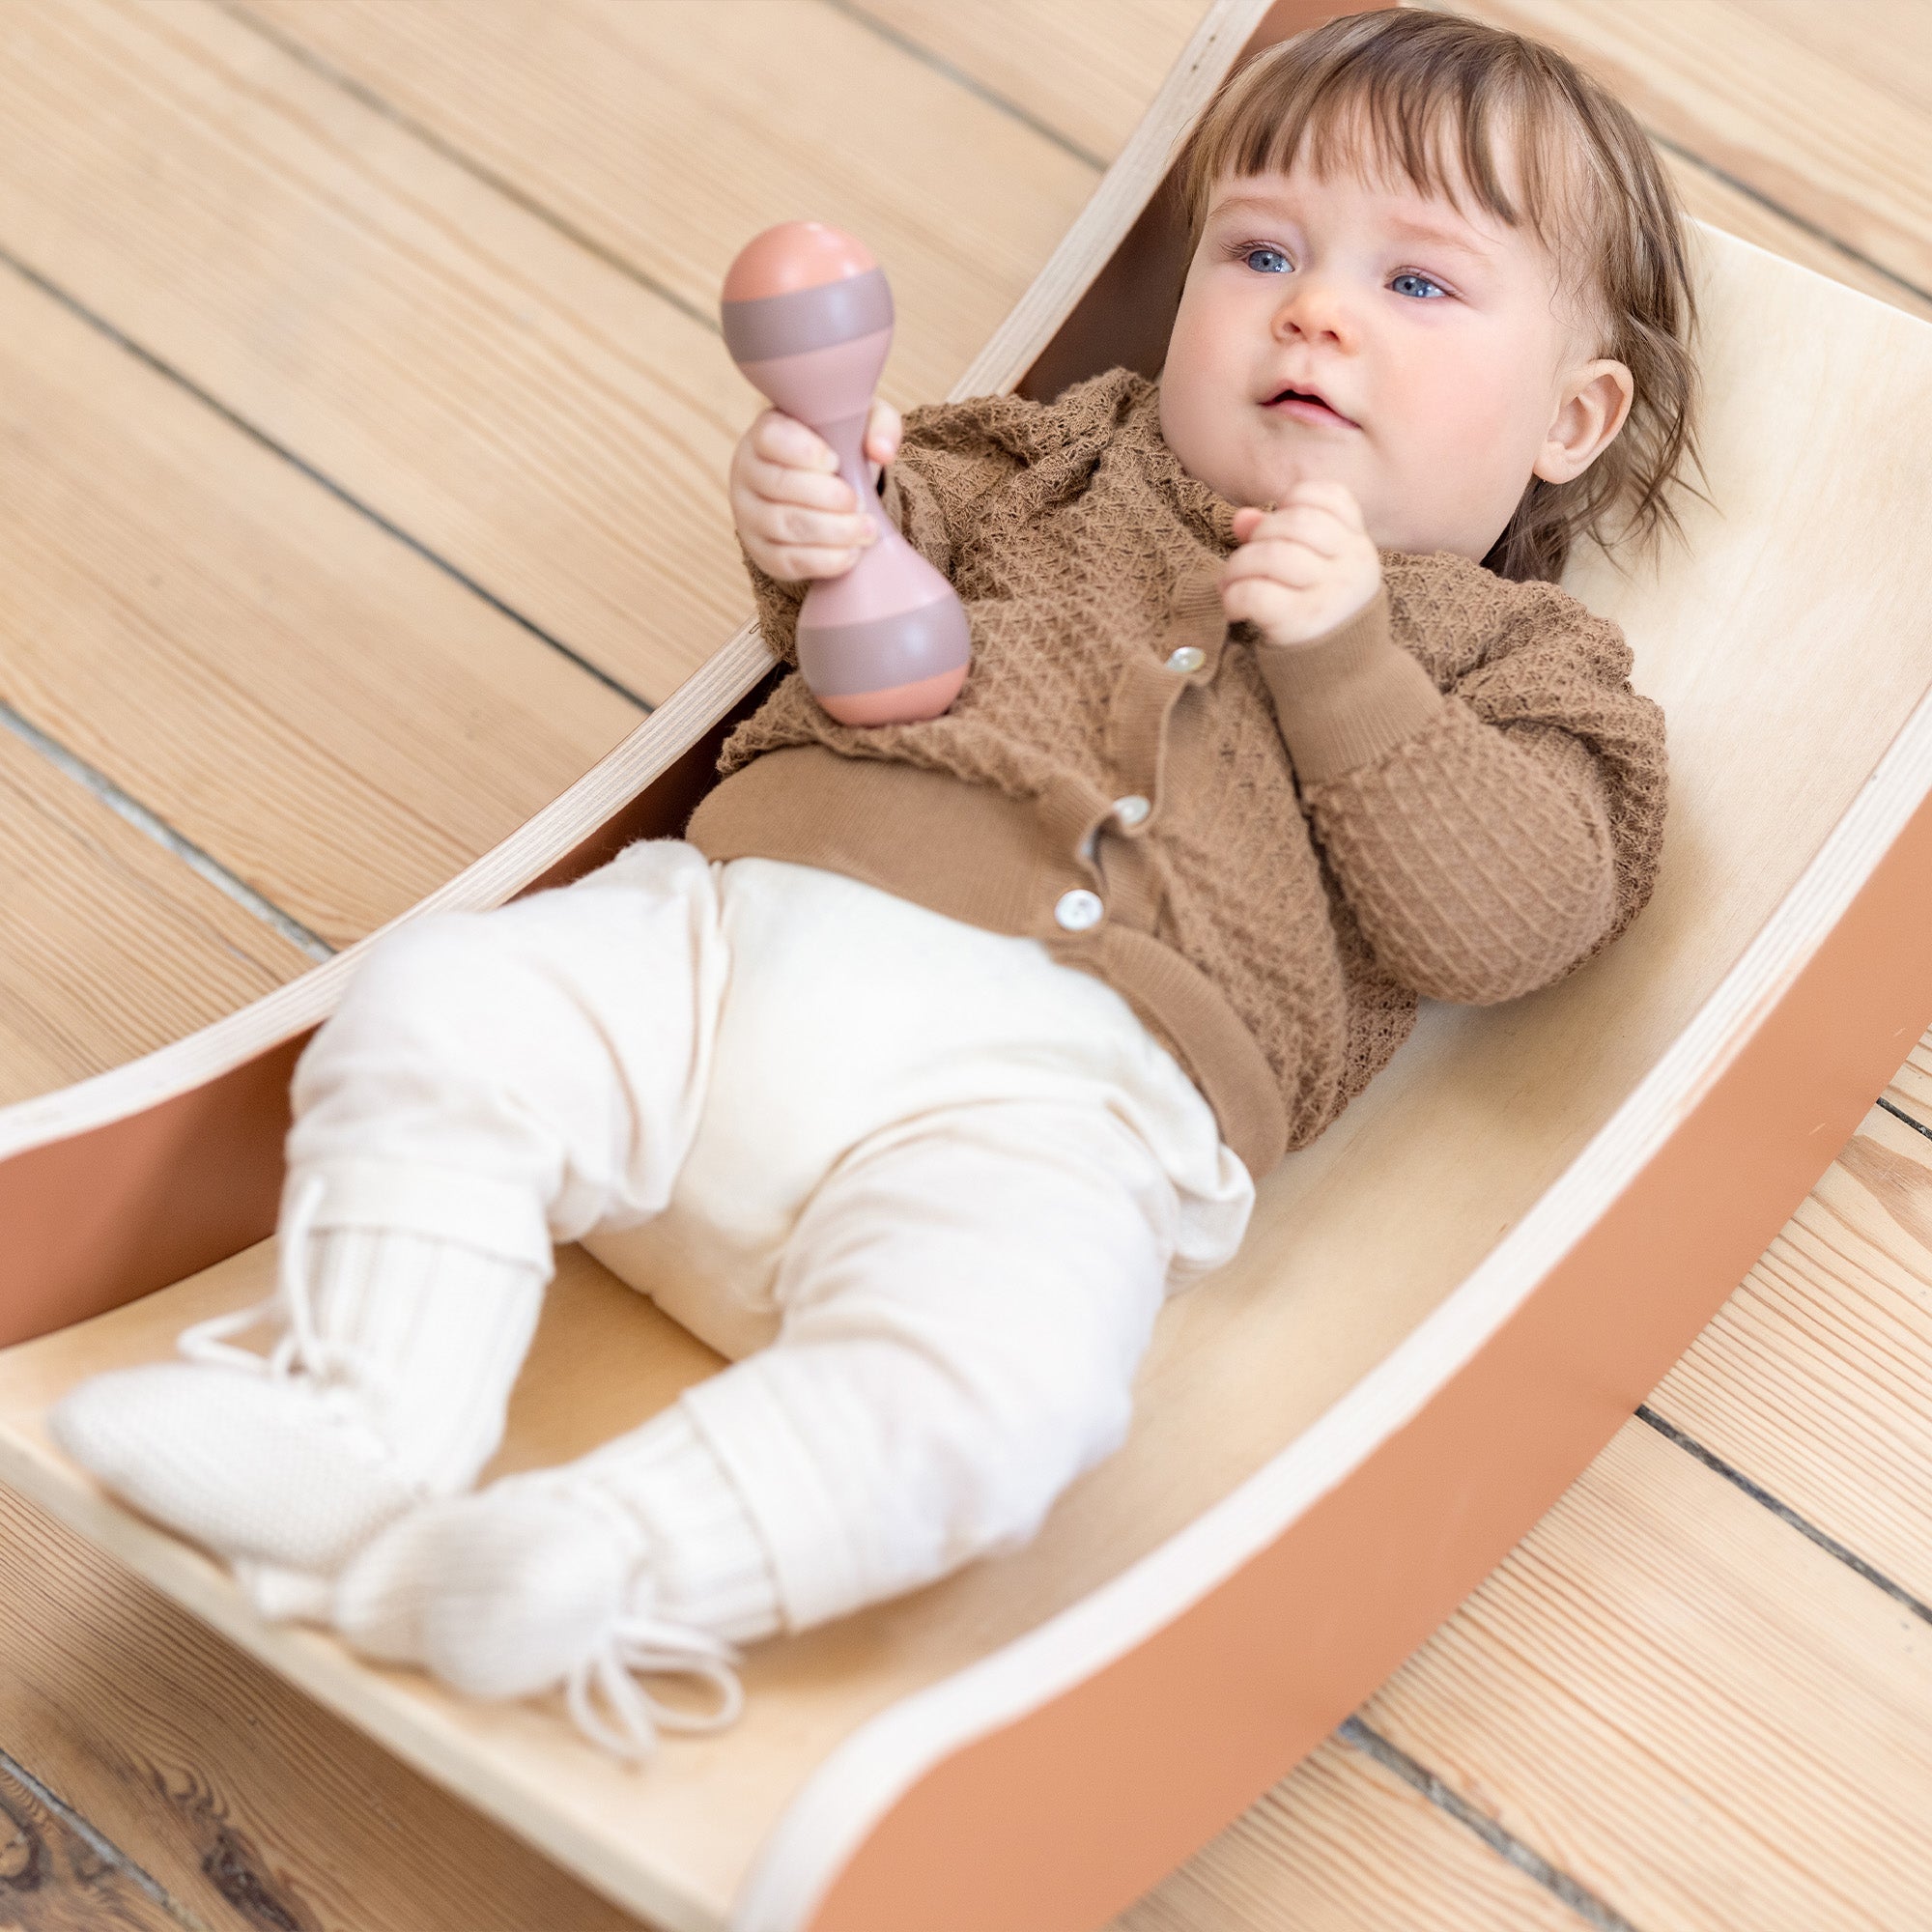 Manta de juegos para bebés - ideal para favorecer el desarrollo motor